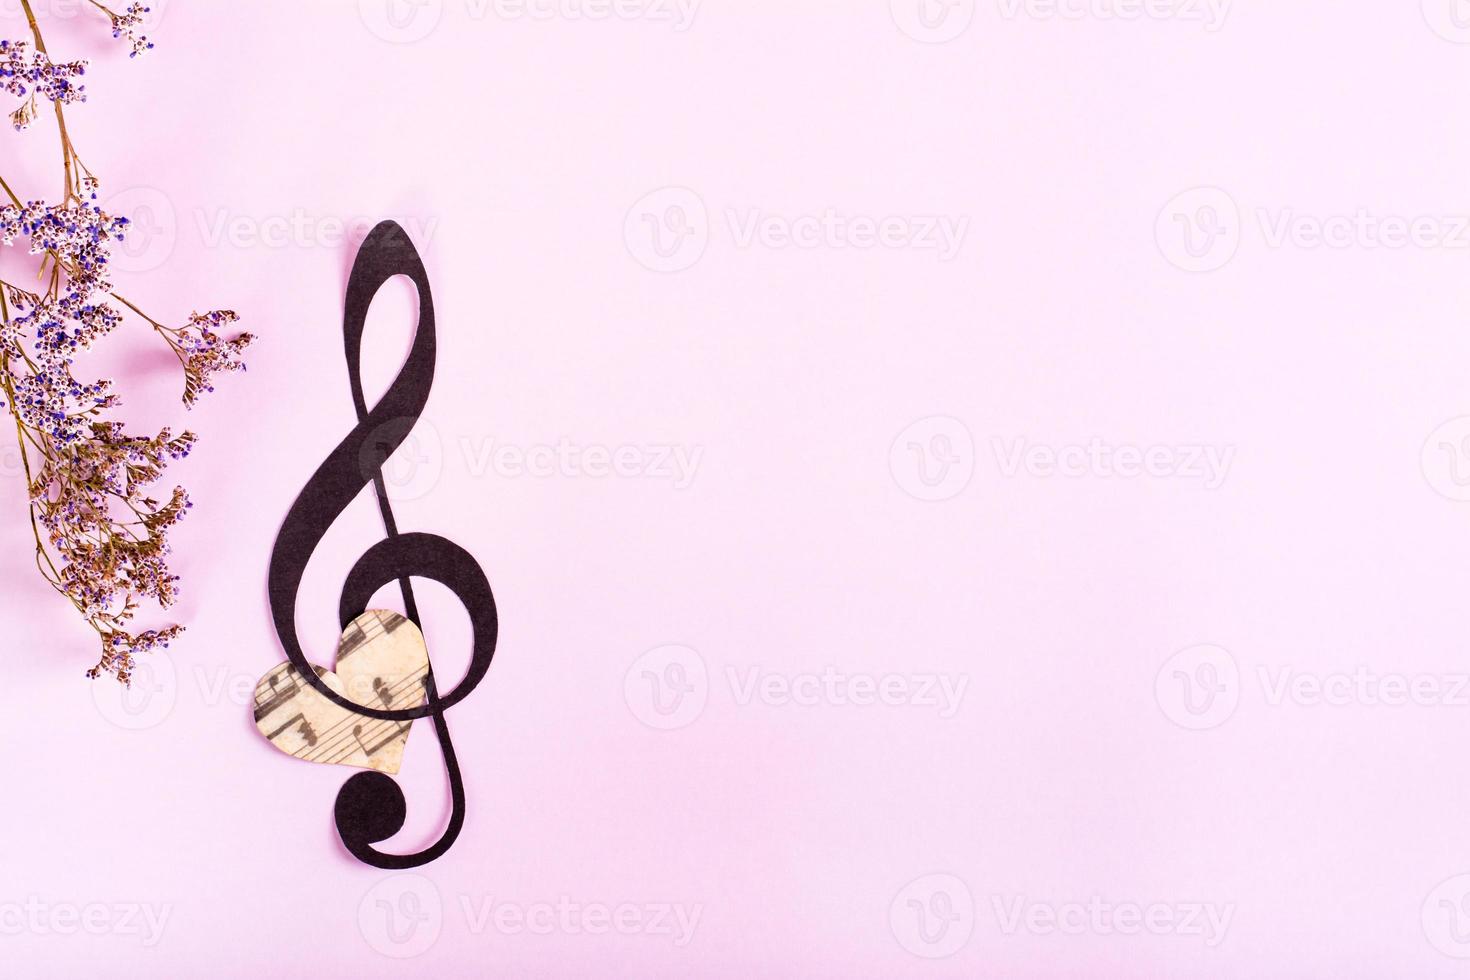 clave musical de papel, corazón y flores secas sobre un fondo rosa. vista superior. foto